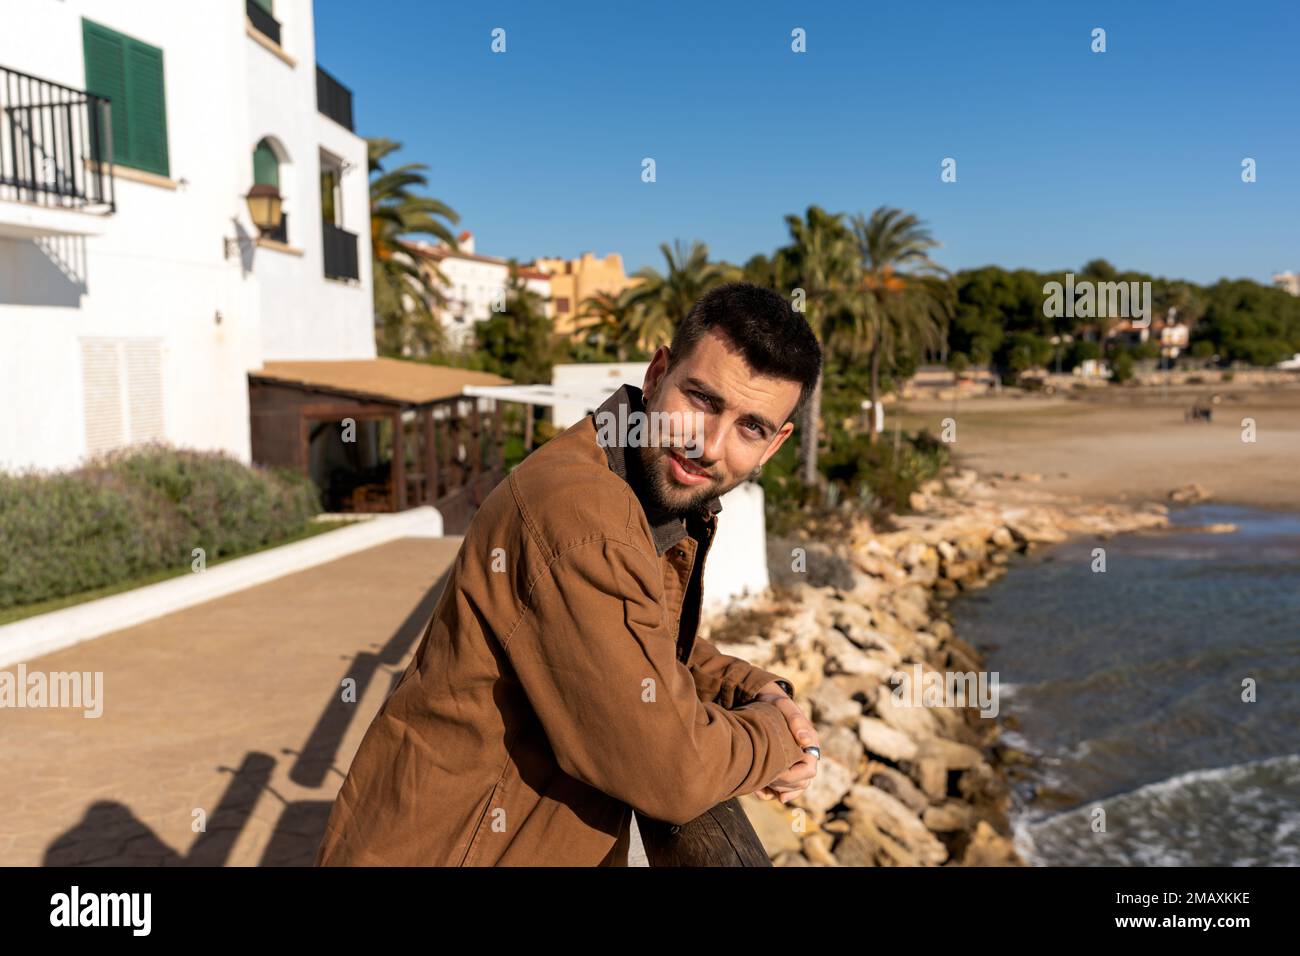 Junger Mann mit positivem Bart in brauner Jacke, der sich auf den Zaun lehnt, während er neben dem Meer und exotischen Bäumen unter wolkenlosem blauem Himmel steht und in die Kamera schaut Stockfoto